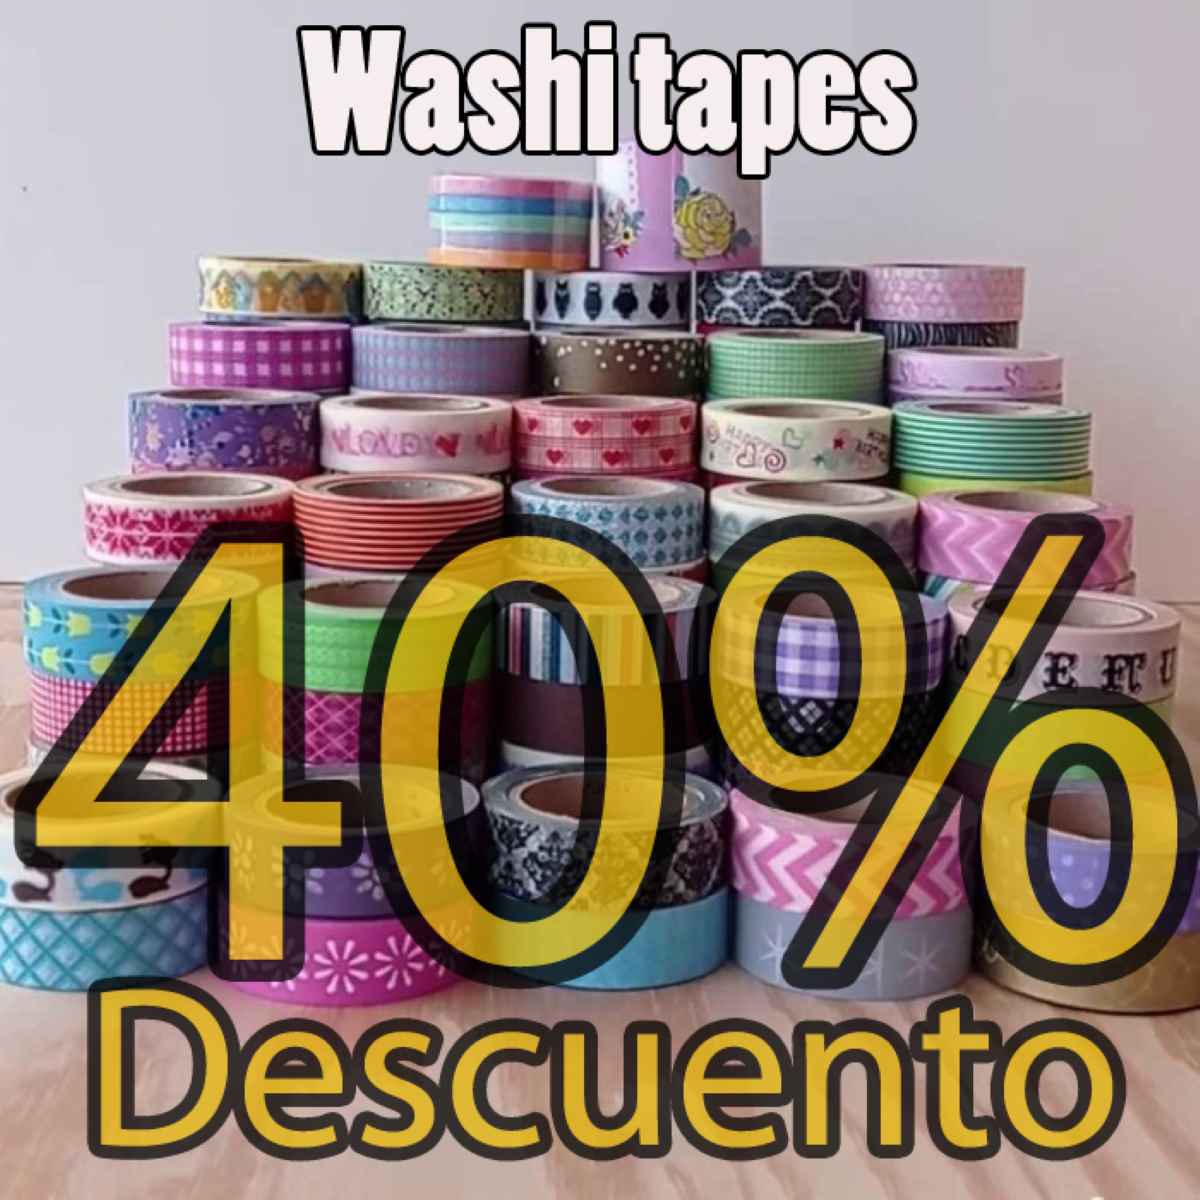 Washi tapes